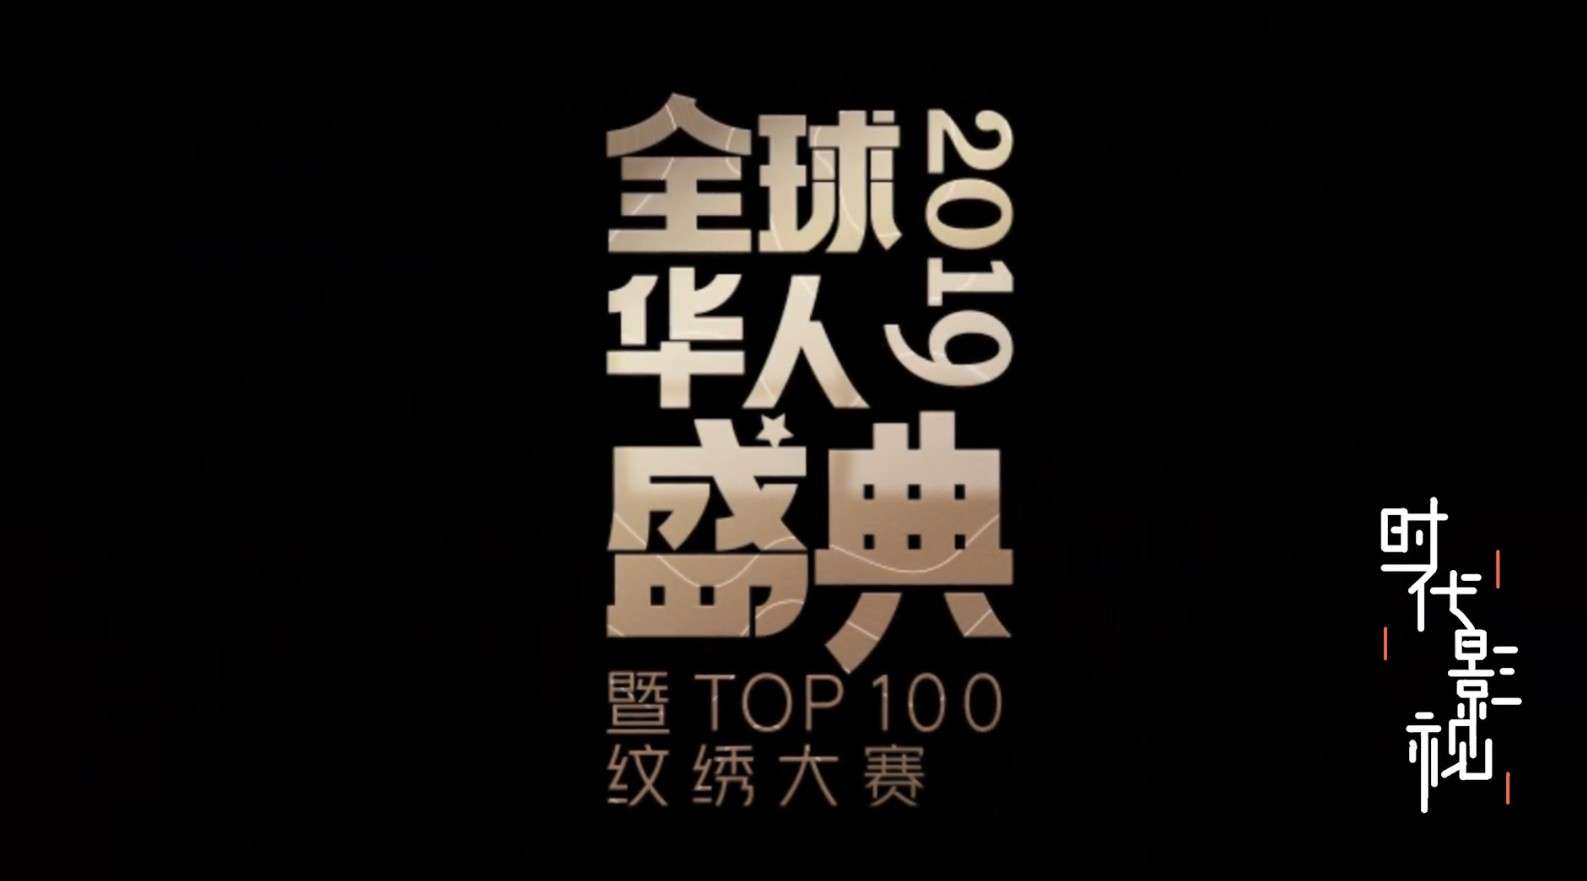 2019全球华人盛典暨top100纹绣大赛